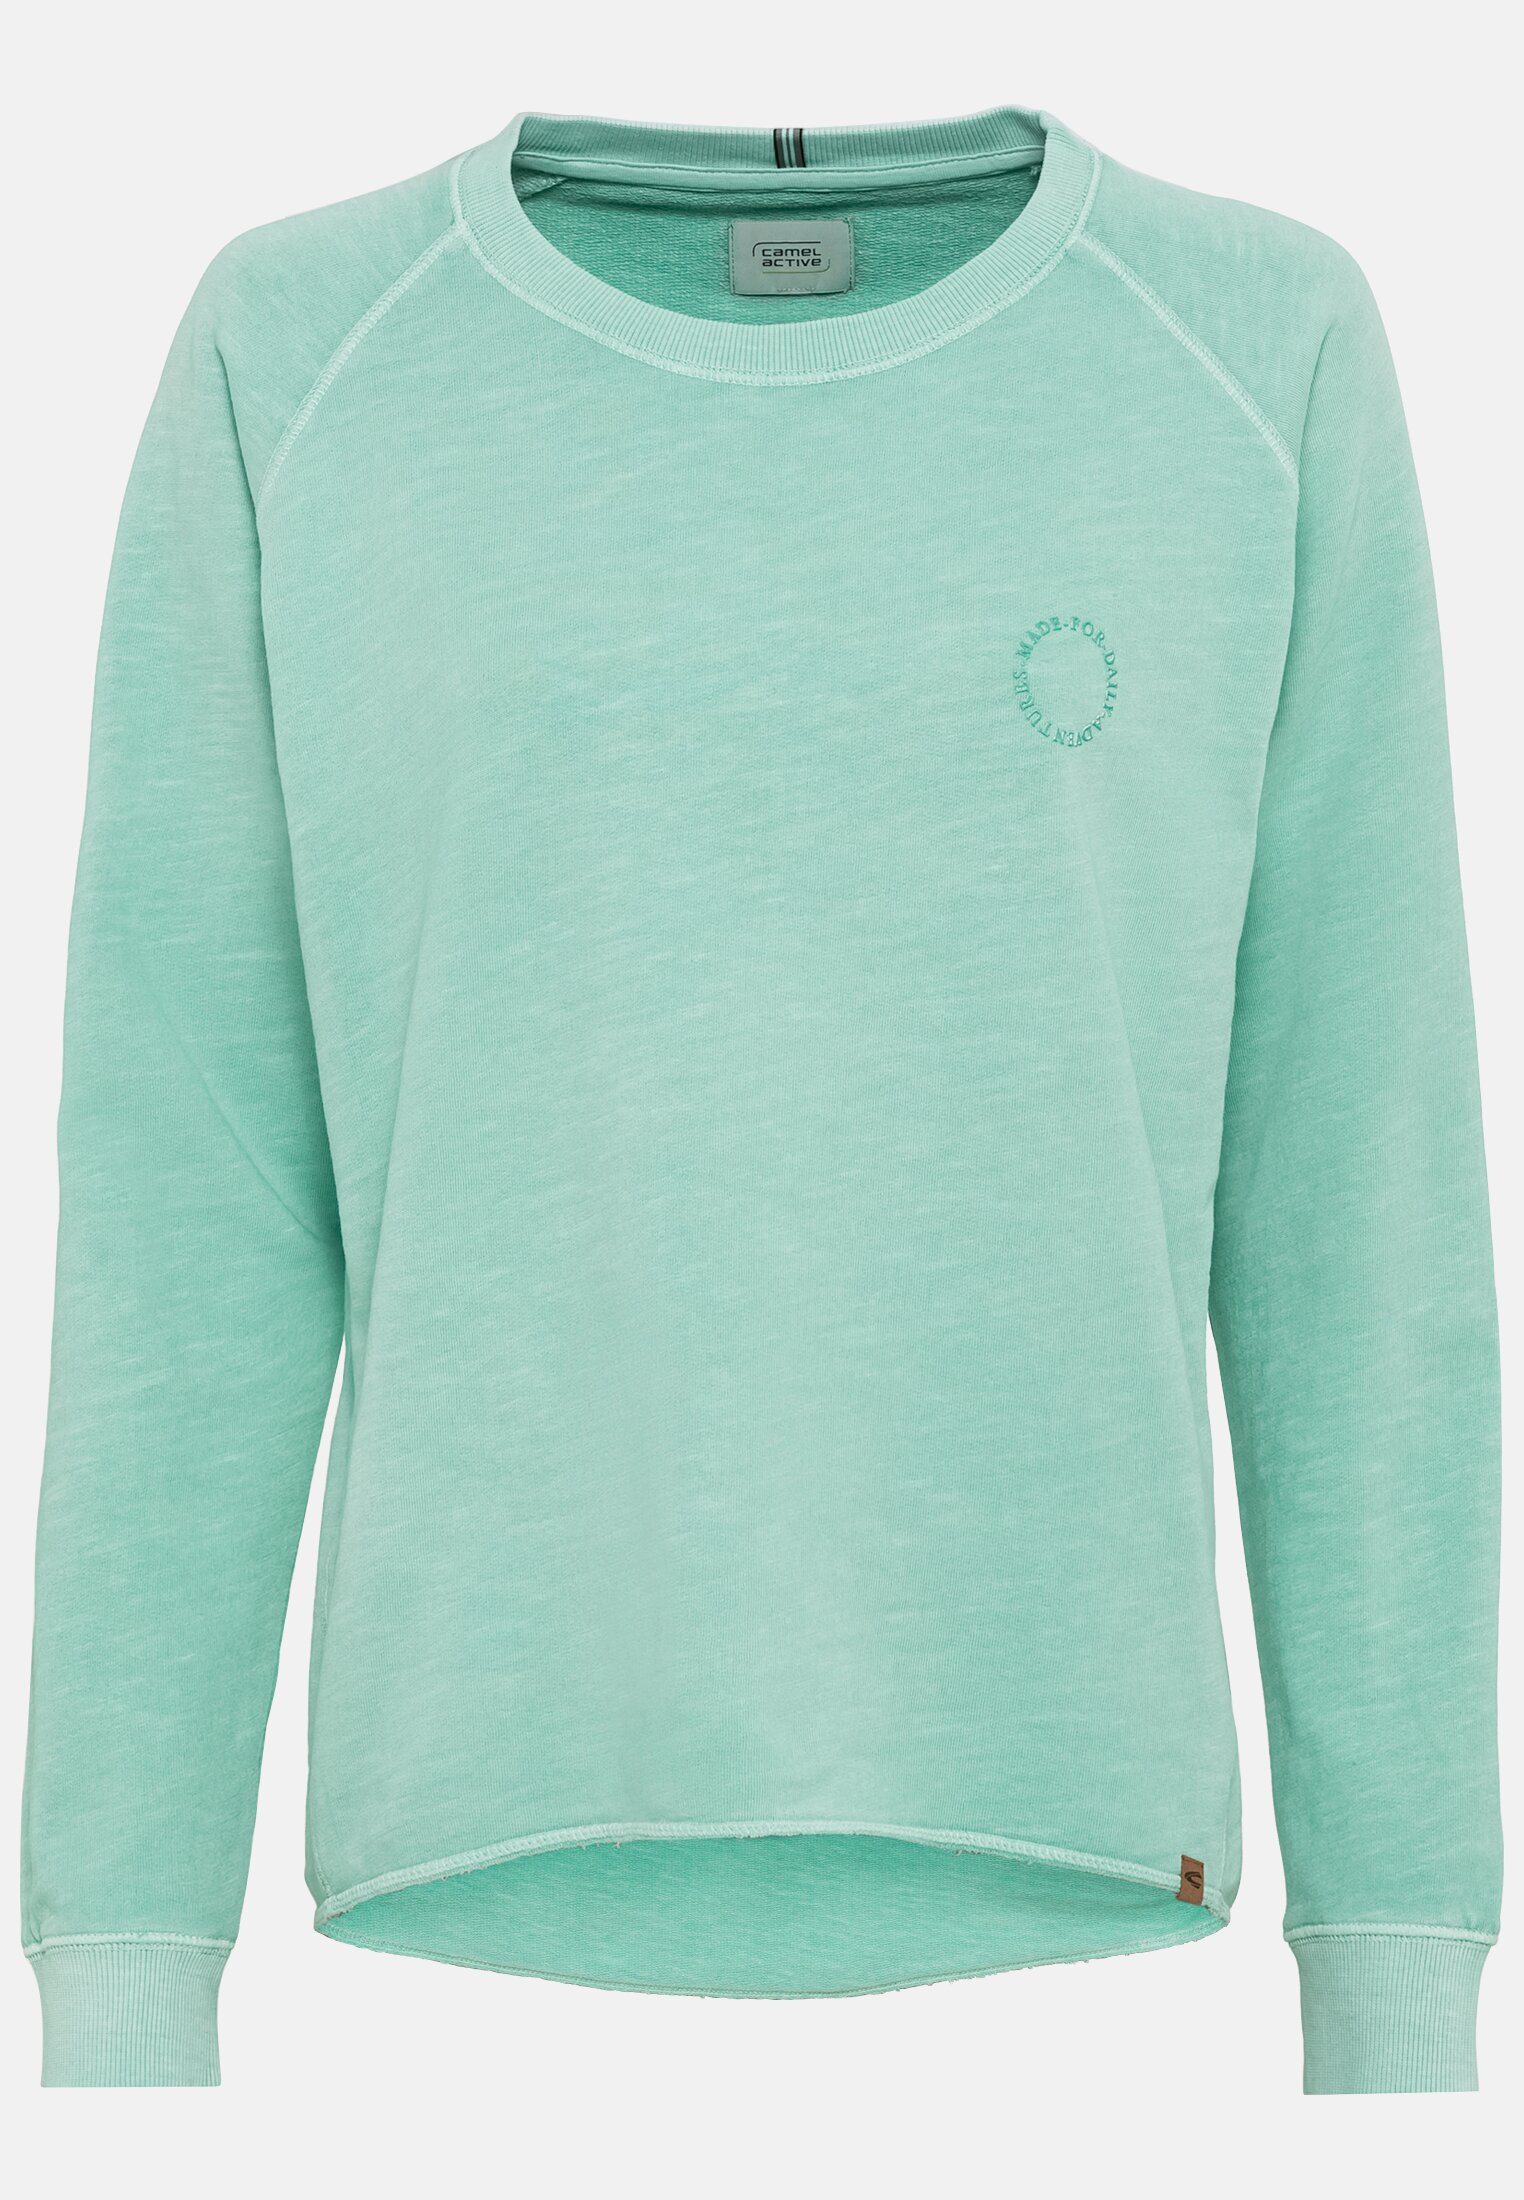 Sweatshirt for in | Green active Damen | S camel